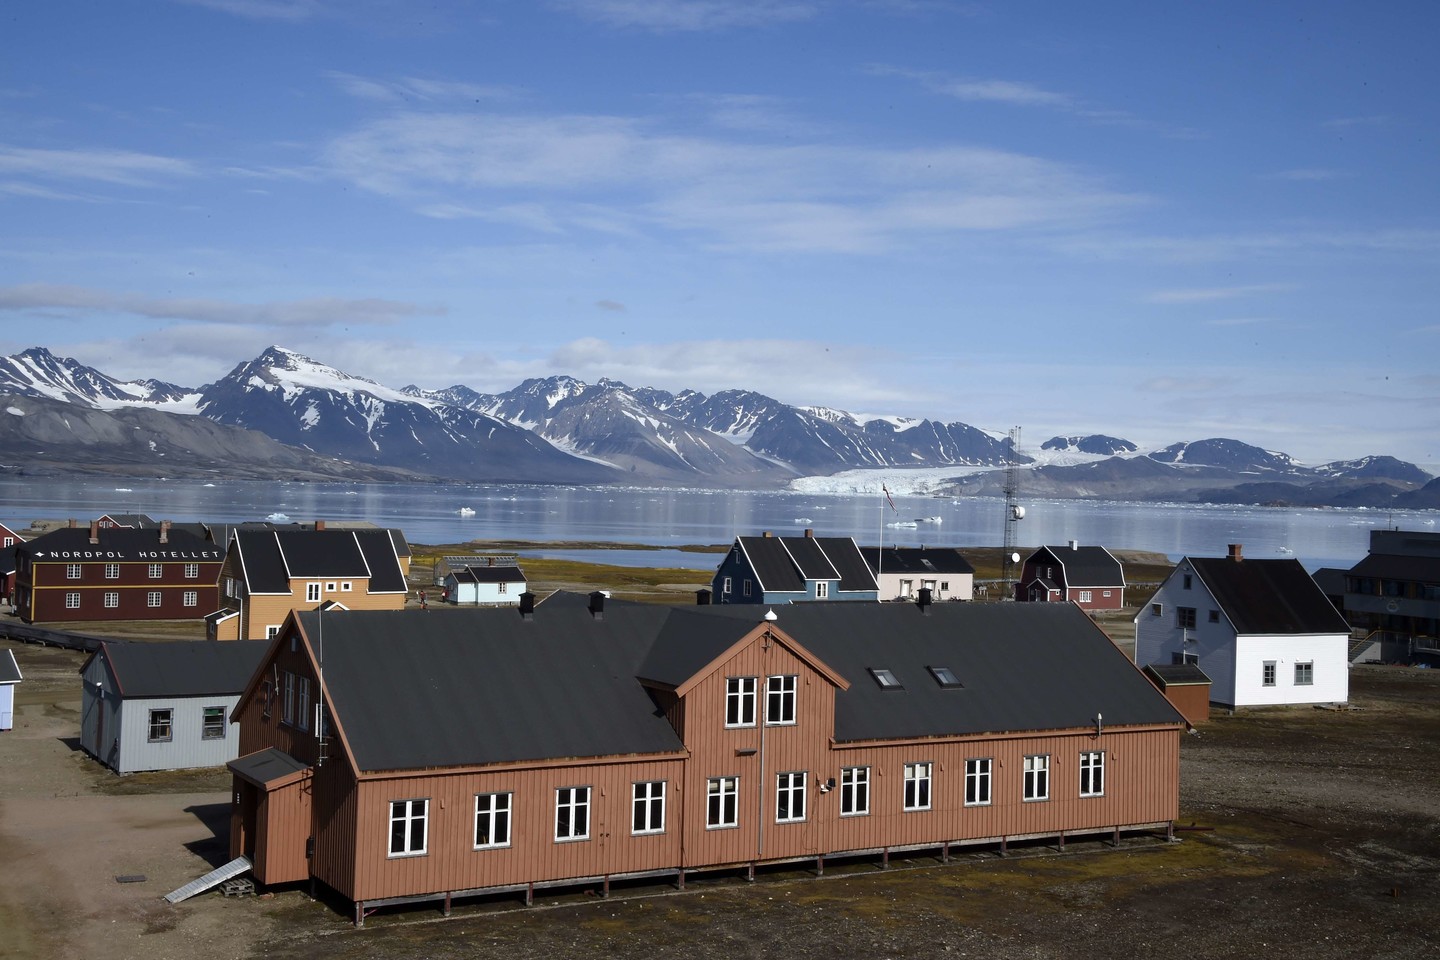  Kiekvienais metais šiam sezoniniam darbui Norvegijoje ūkininkas pageidavo vidutiniškai apie 45 darbuotojų.<br> Reuters/Scanpix nuotr.